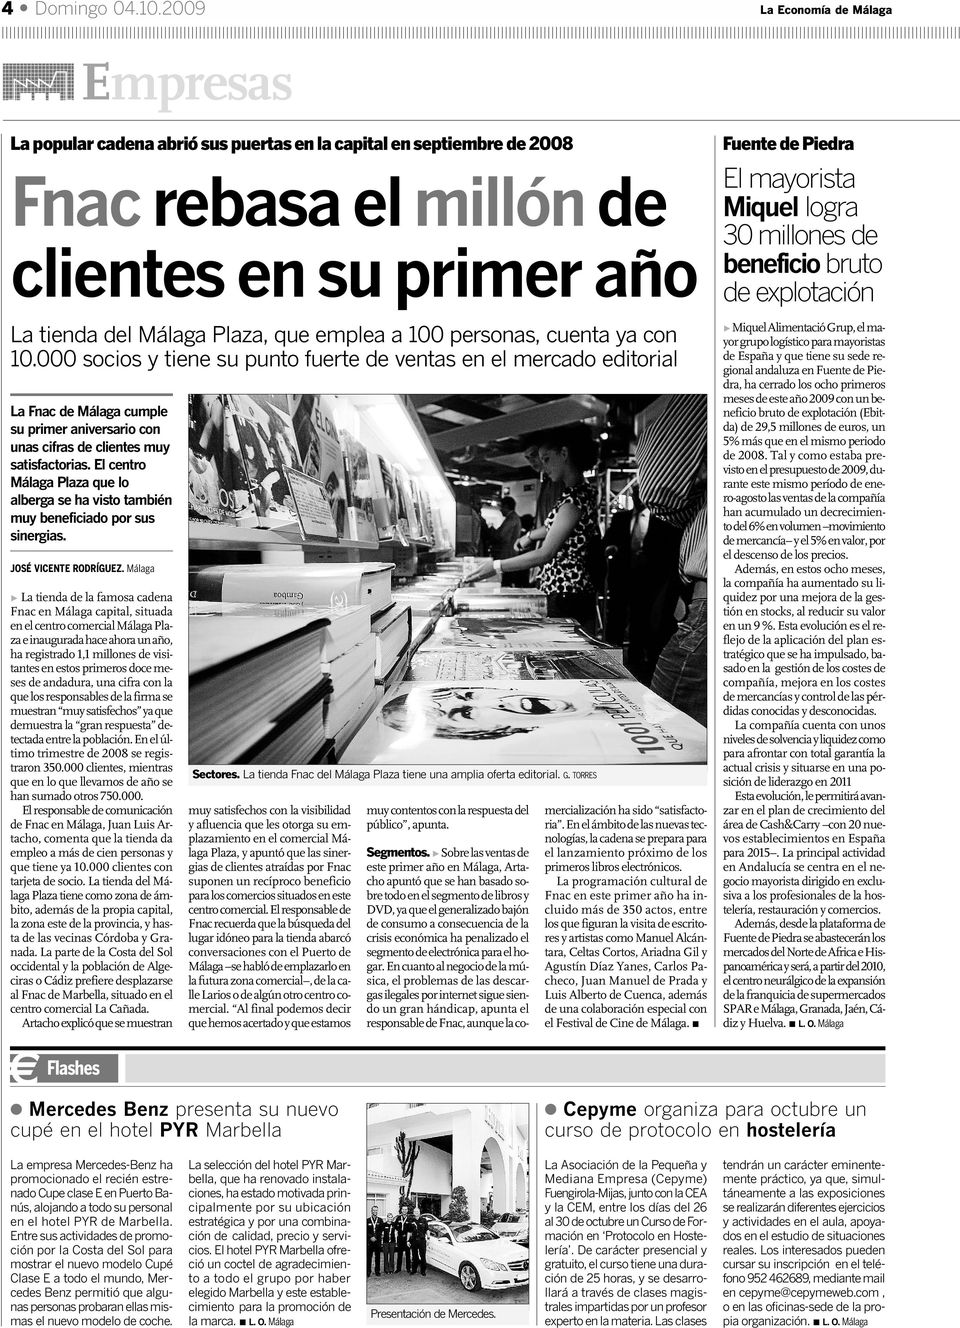 100 personas, cuenta ya con 10.000 socios y tiene su punto fuerte de ventas en el mercado editorial La Fnac de Málaga cumple su primer aniversario con unas cifras de clientes muy satisfactorias.